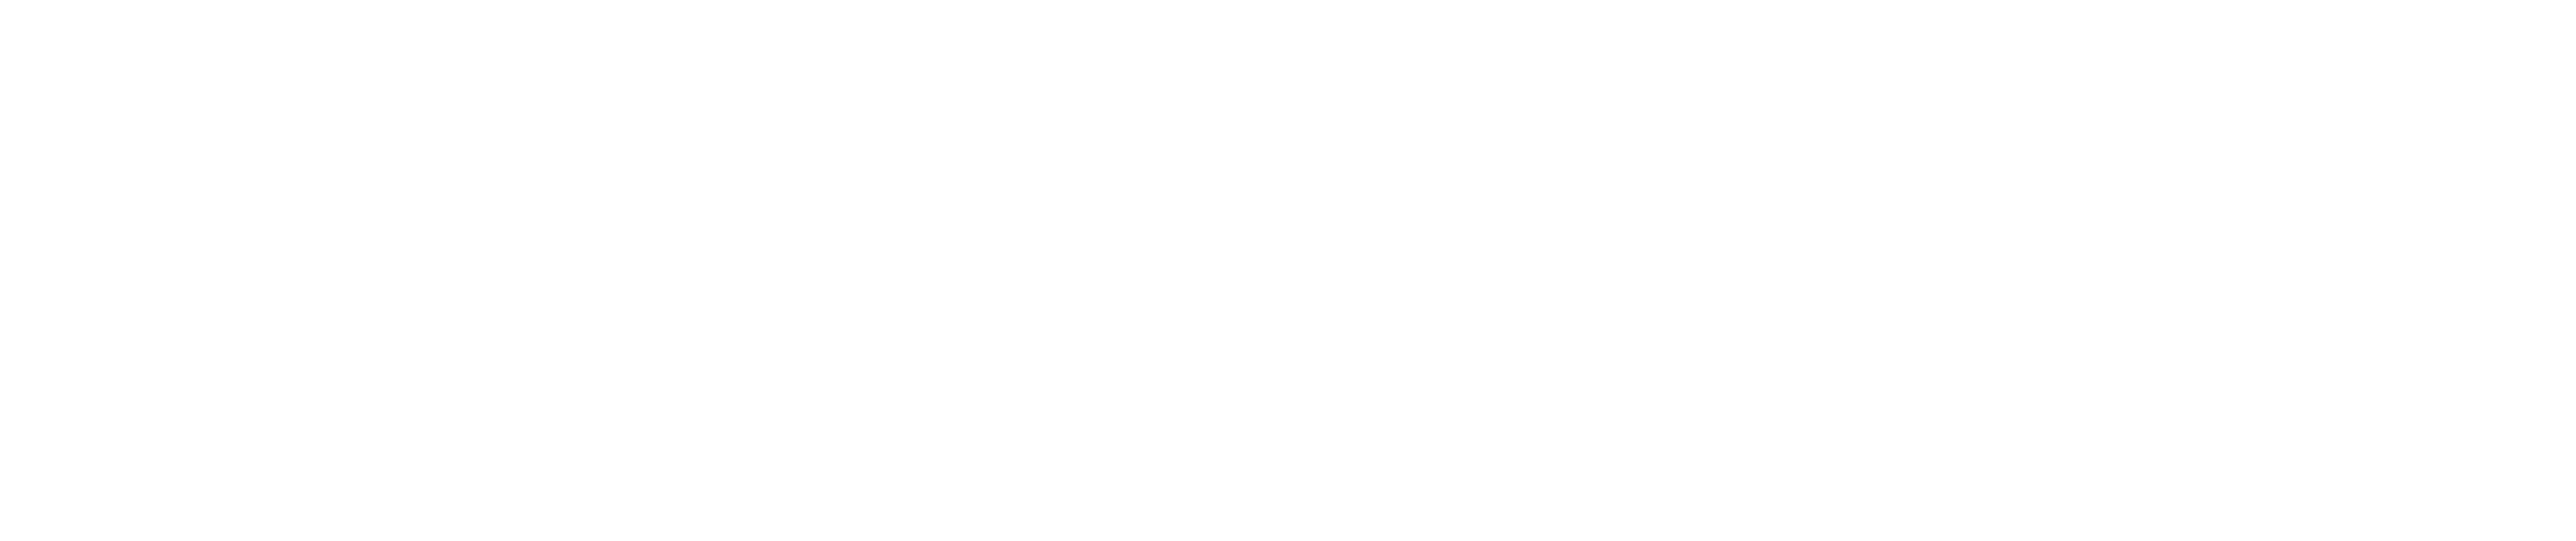 Housen logo